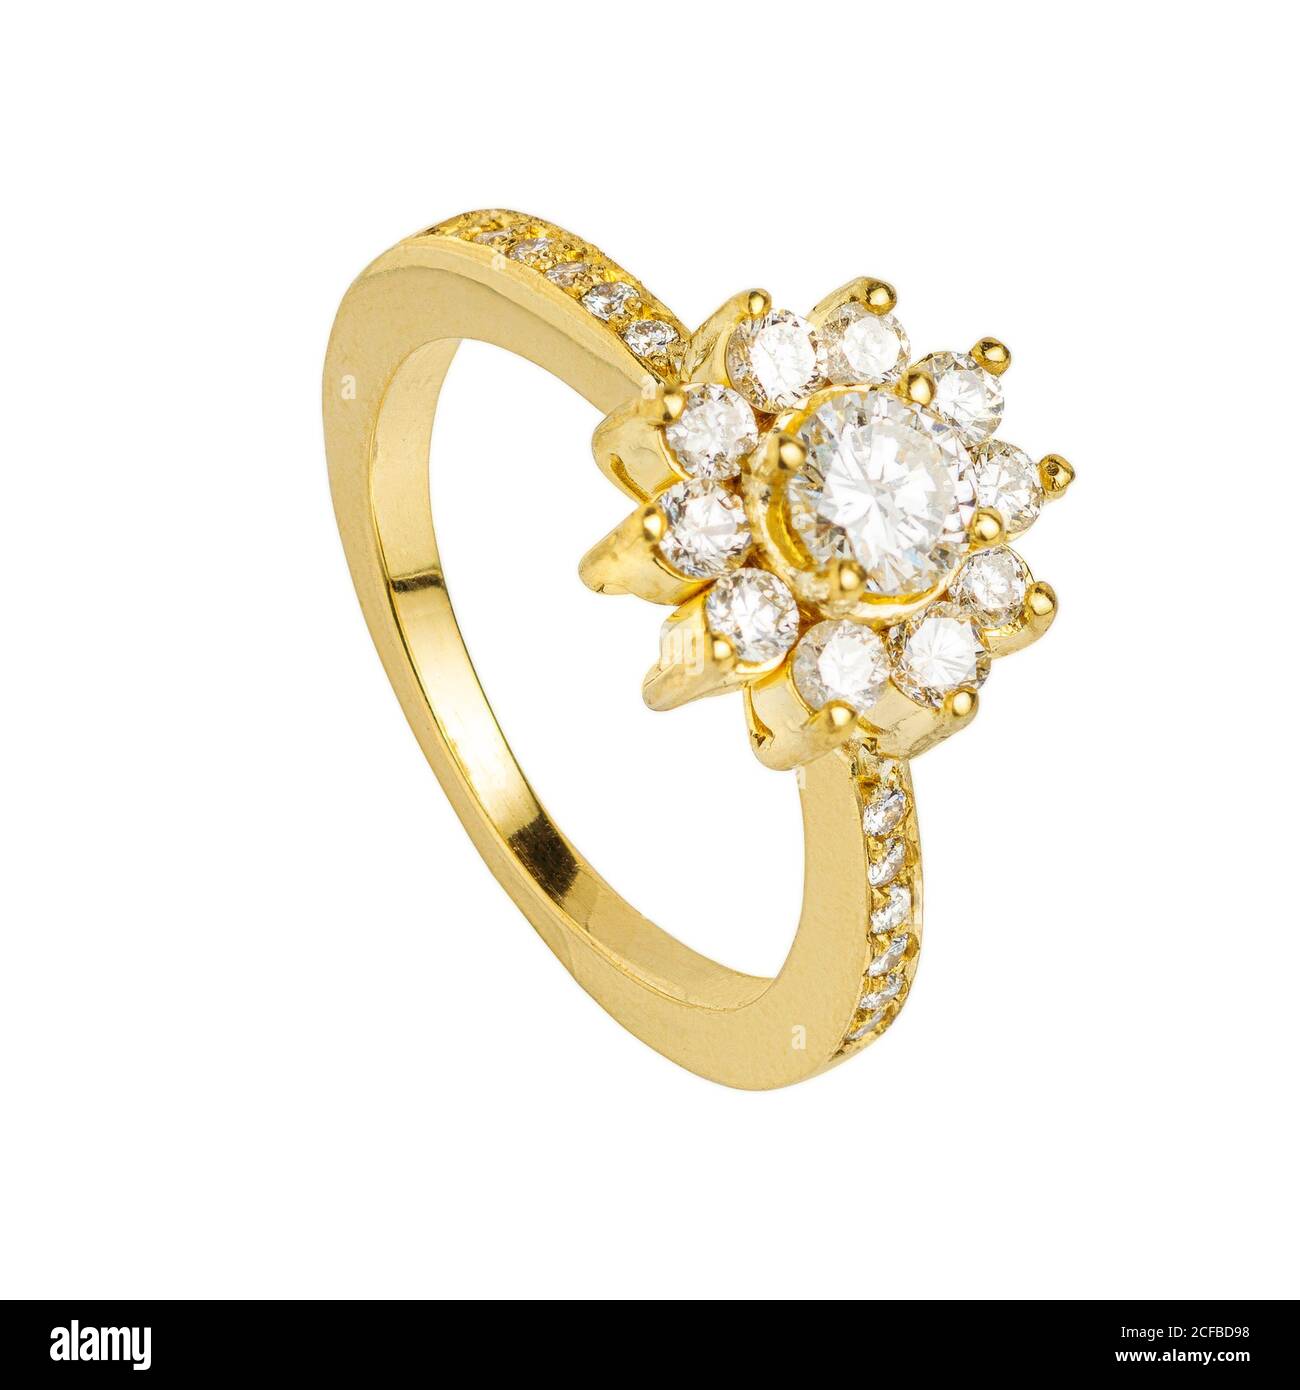 Diamante de oro y piedra preciosa anillo de boda macro de cierre aislado en fondo blanco Foto de stock